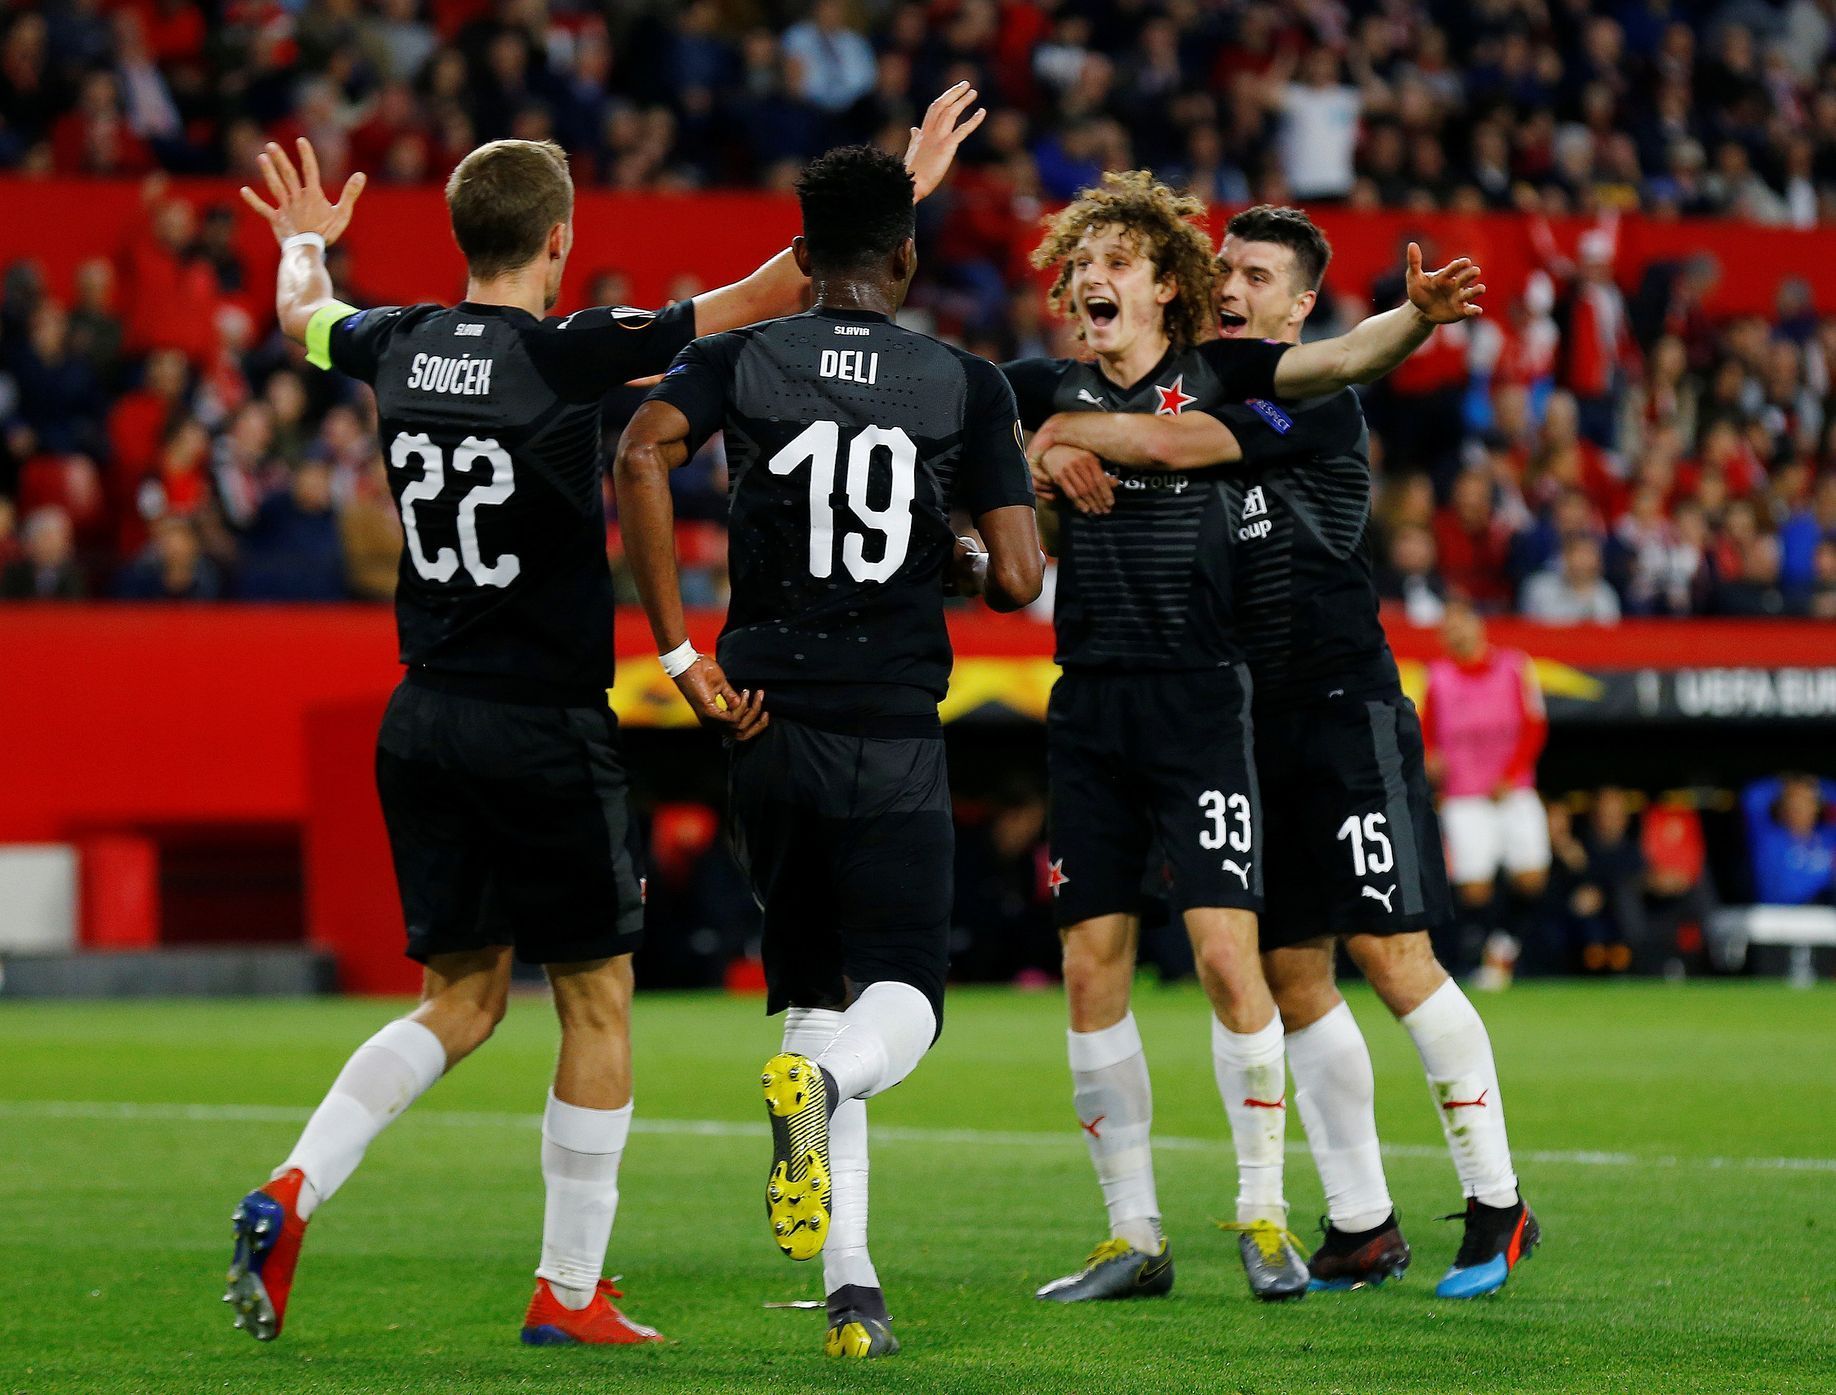 Záložník Slavie Alex Král (druhý zprava) se raduje se spoluhráči z gólu, kterým vyrovnal v utkání Evropské ligy proti FC Sevilla na konečných 2:2.